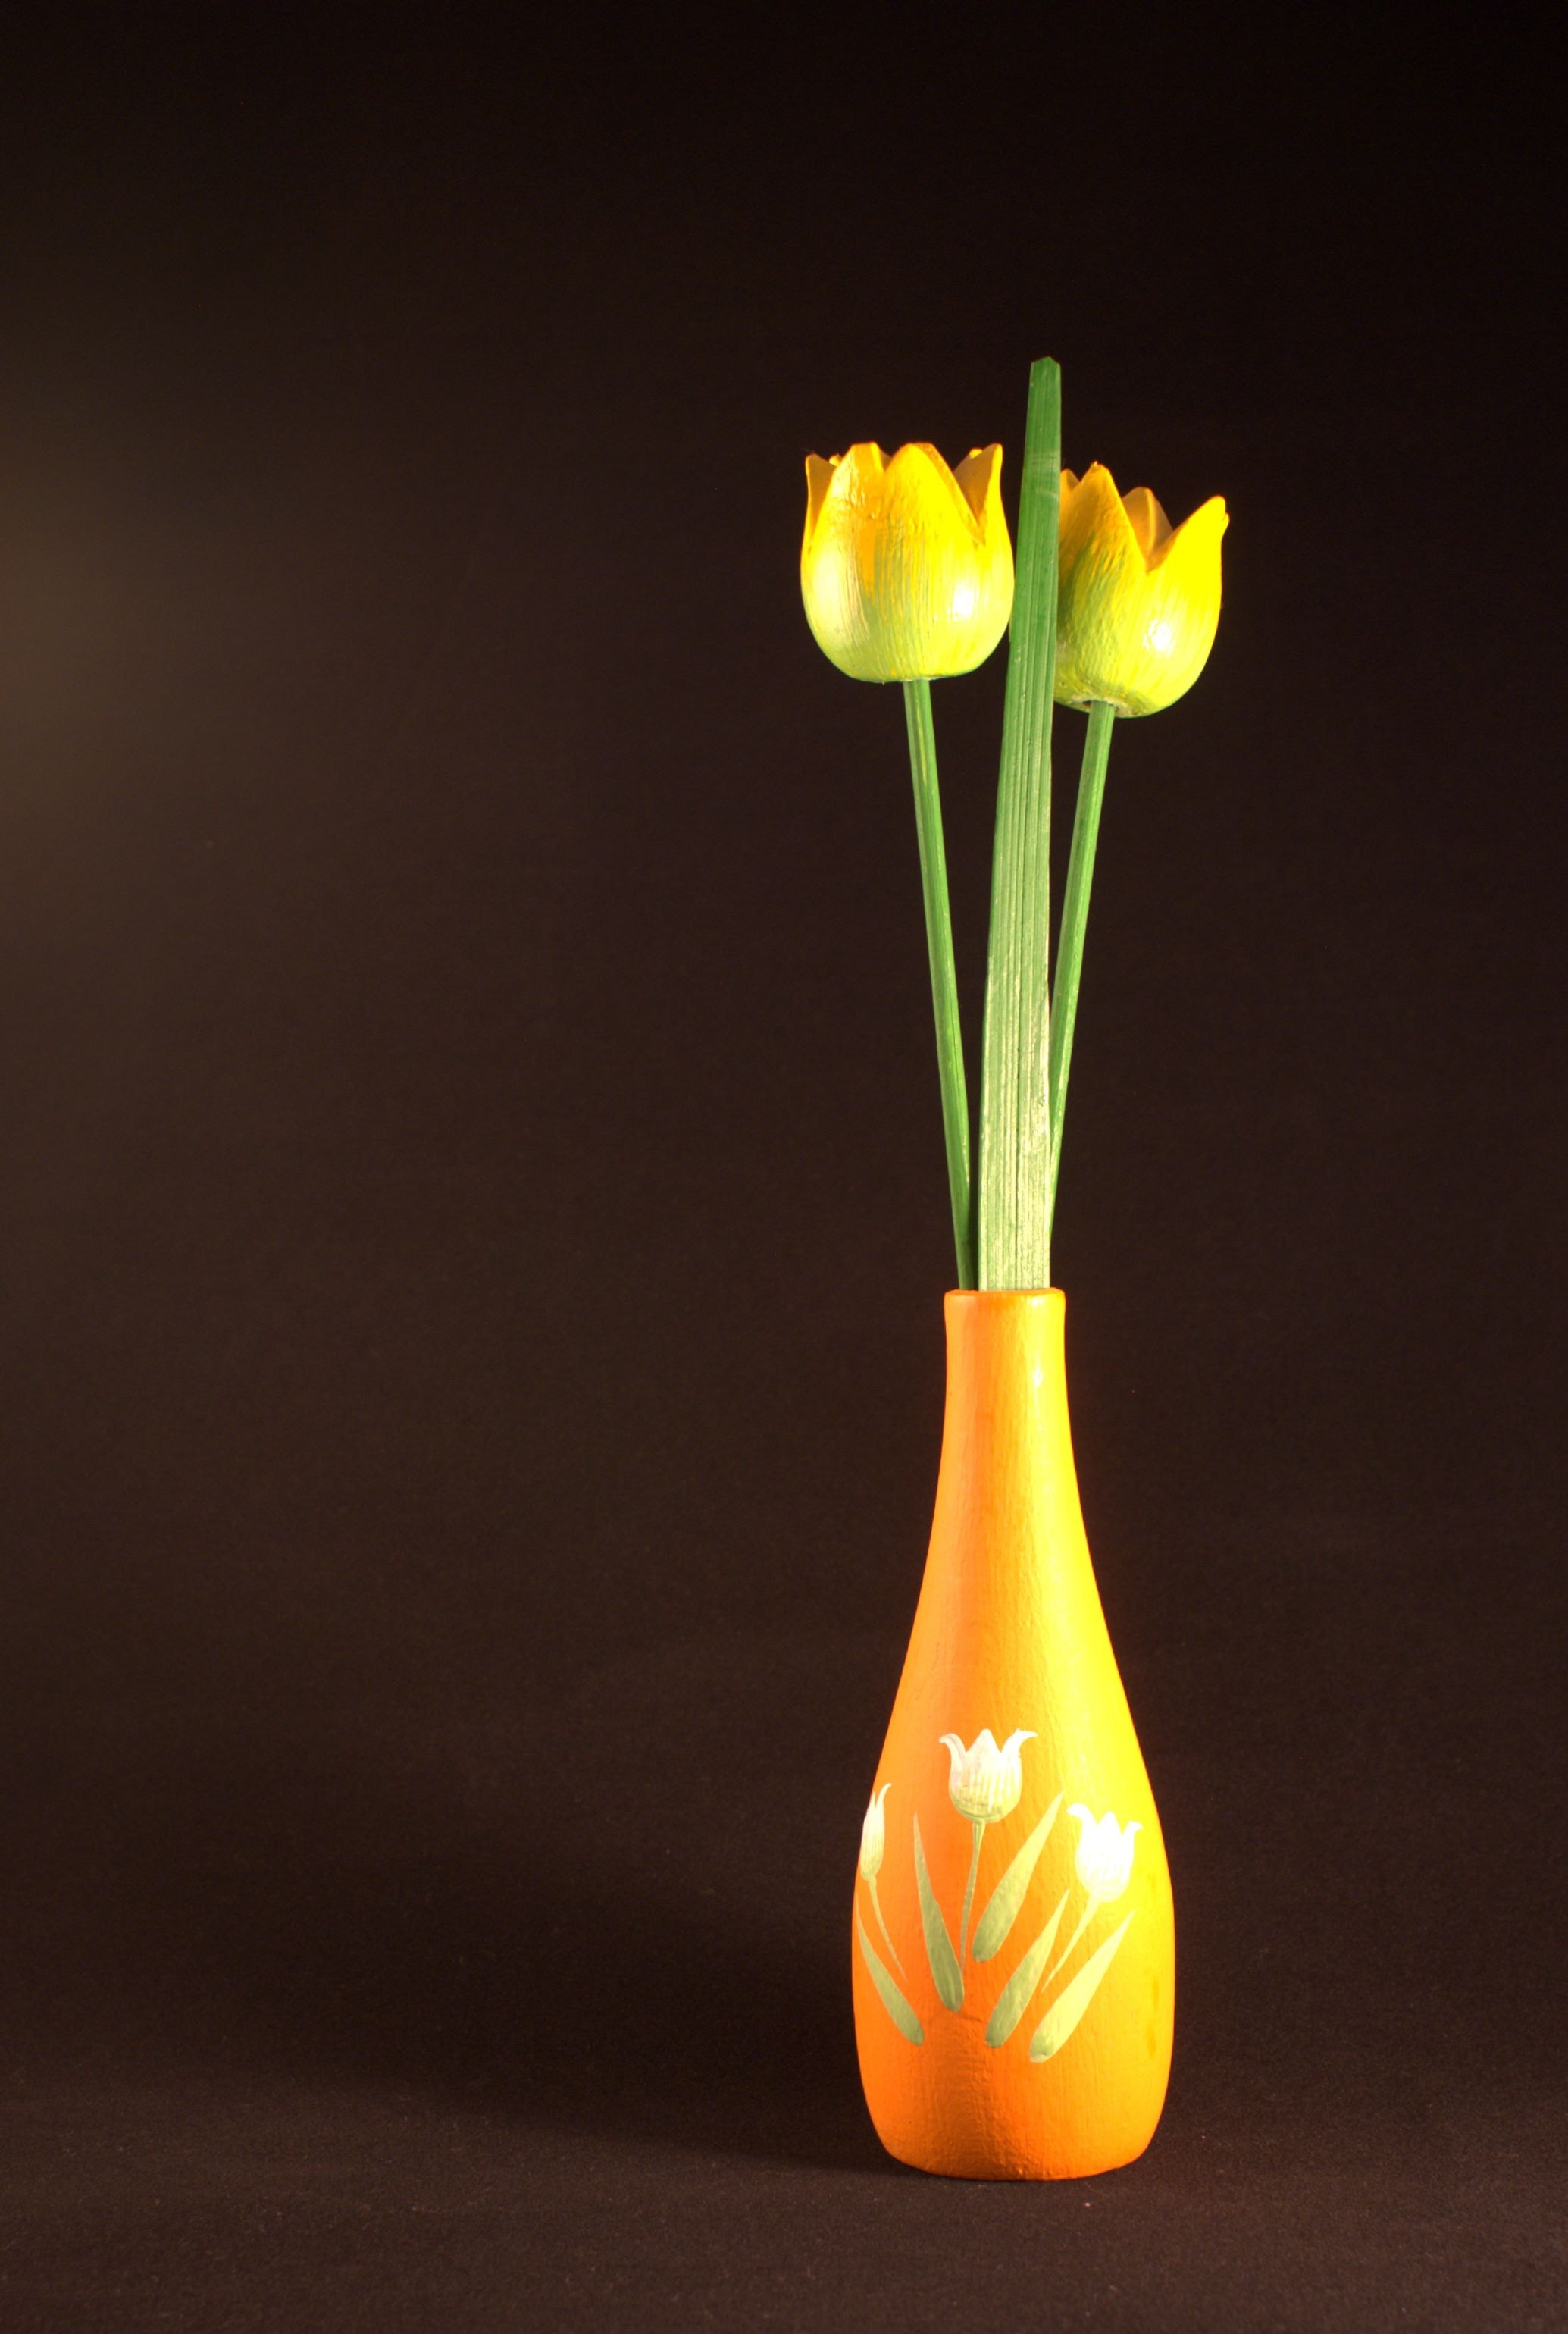 yellow decorative tulips with vase